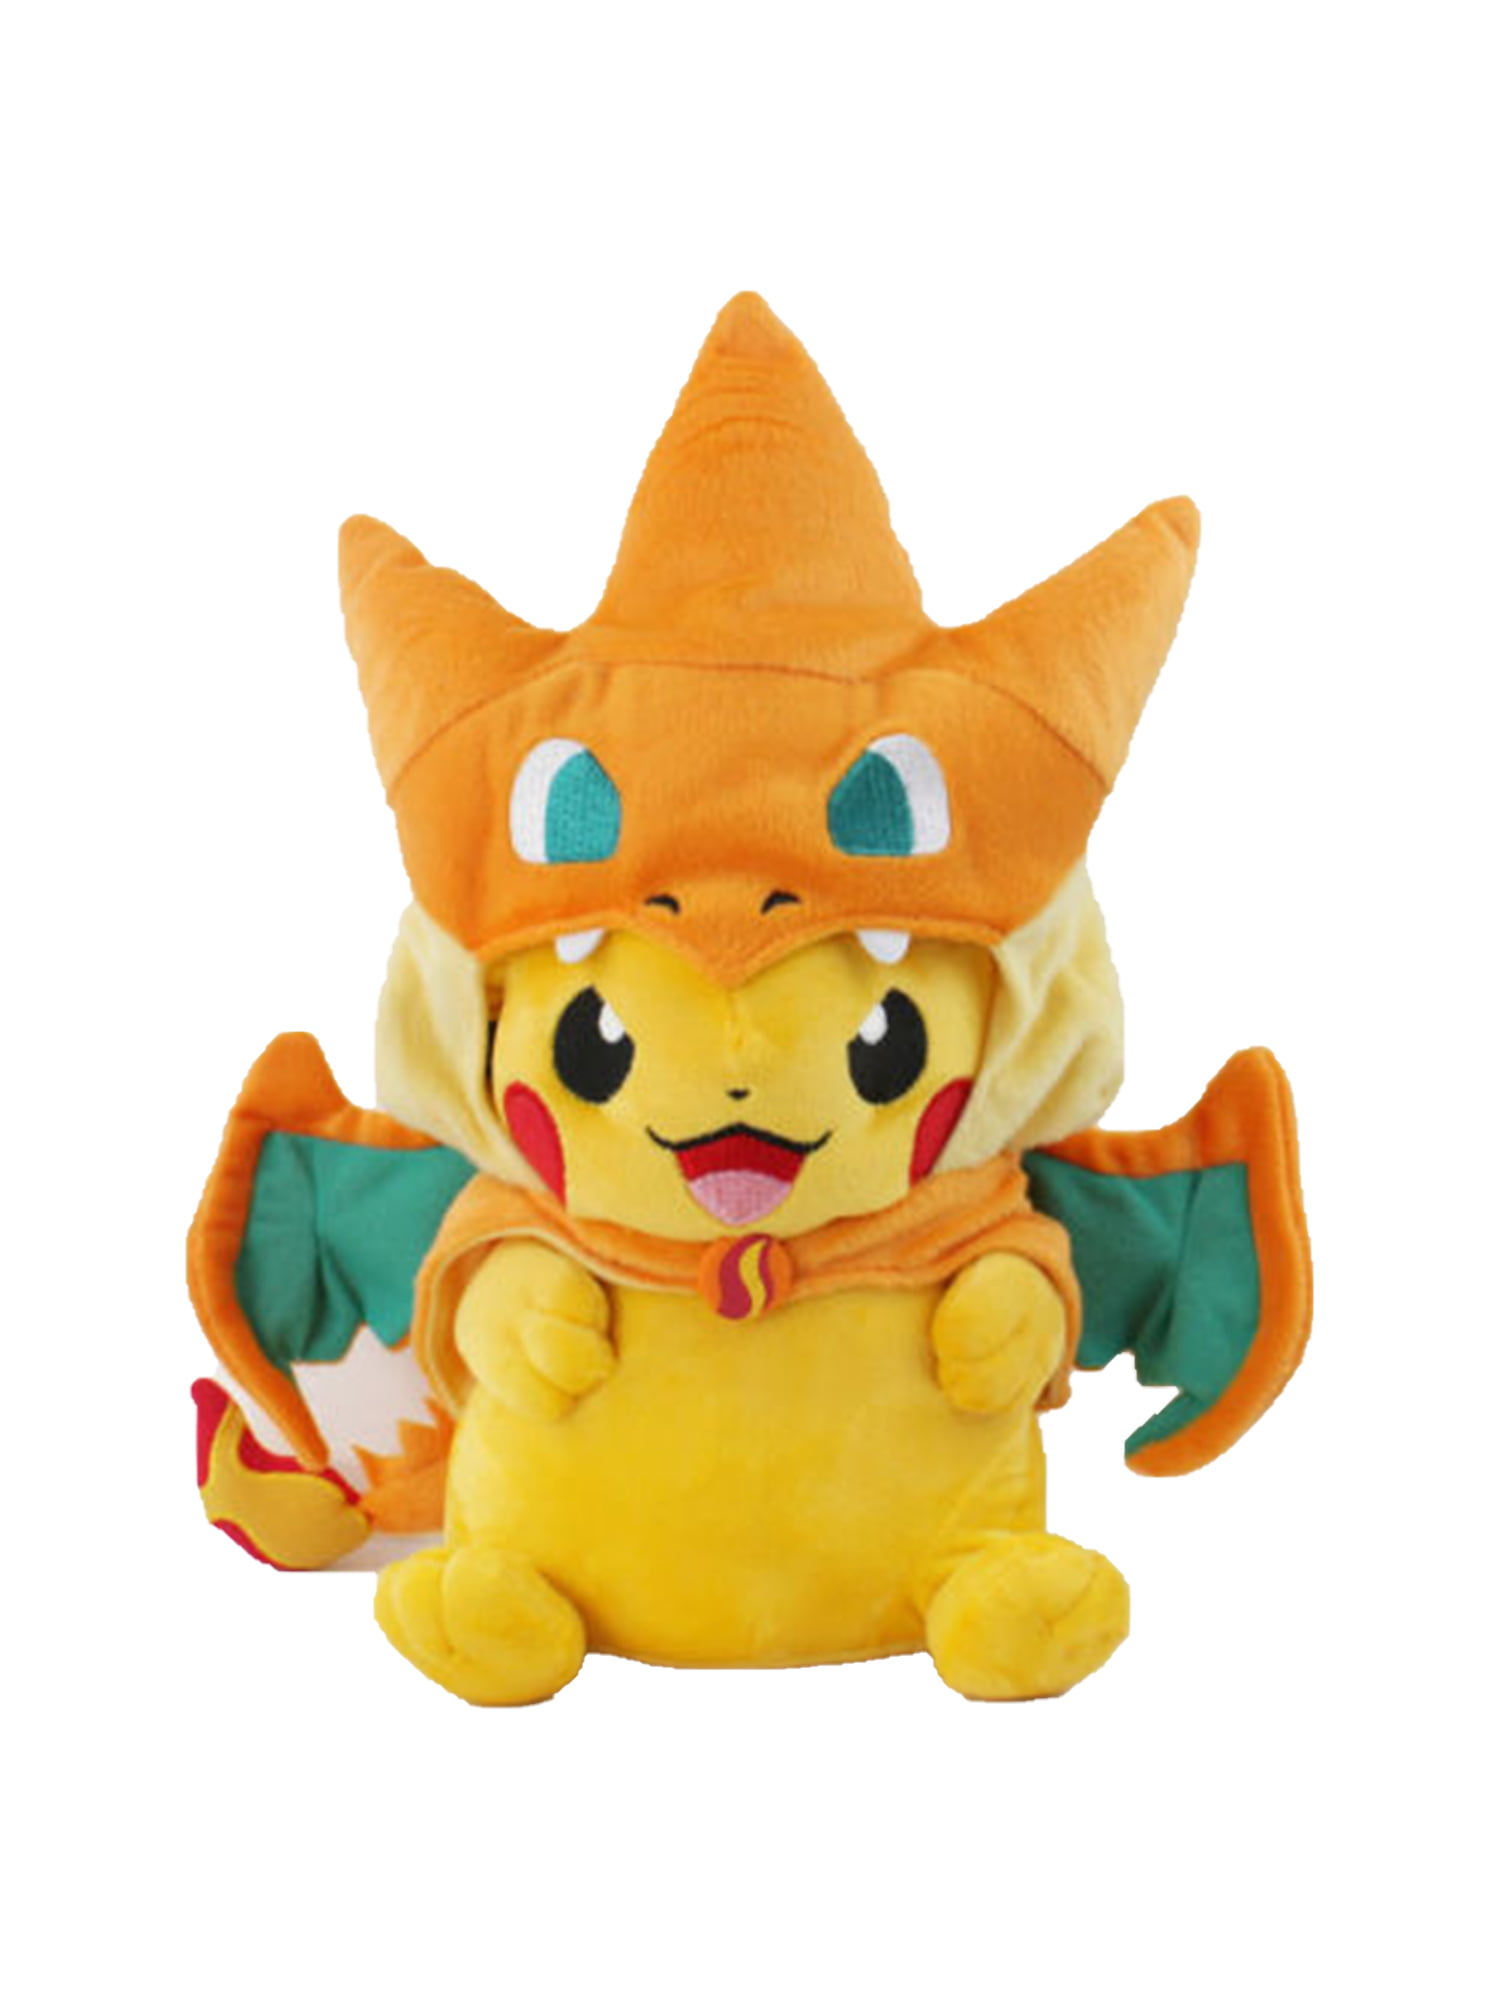 Pokemon Pikachu With Charizard hat Plush Soft Toy Stuffed New Animal Doll 10'' 